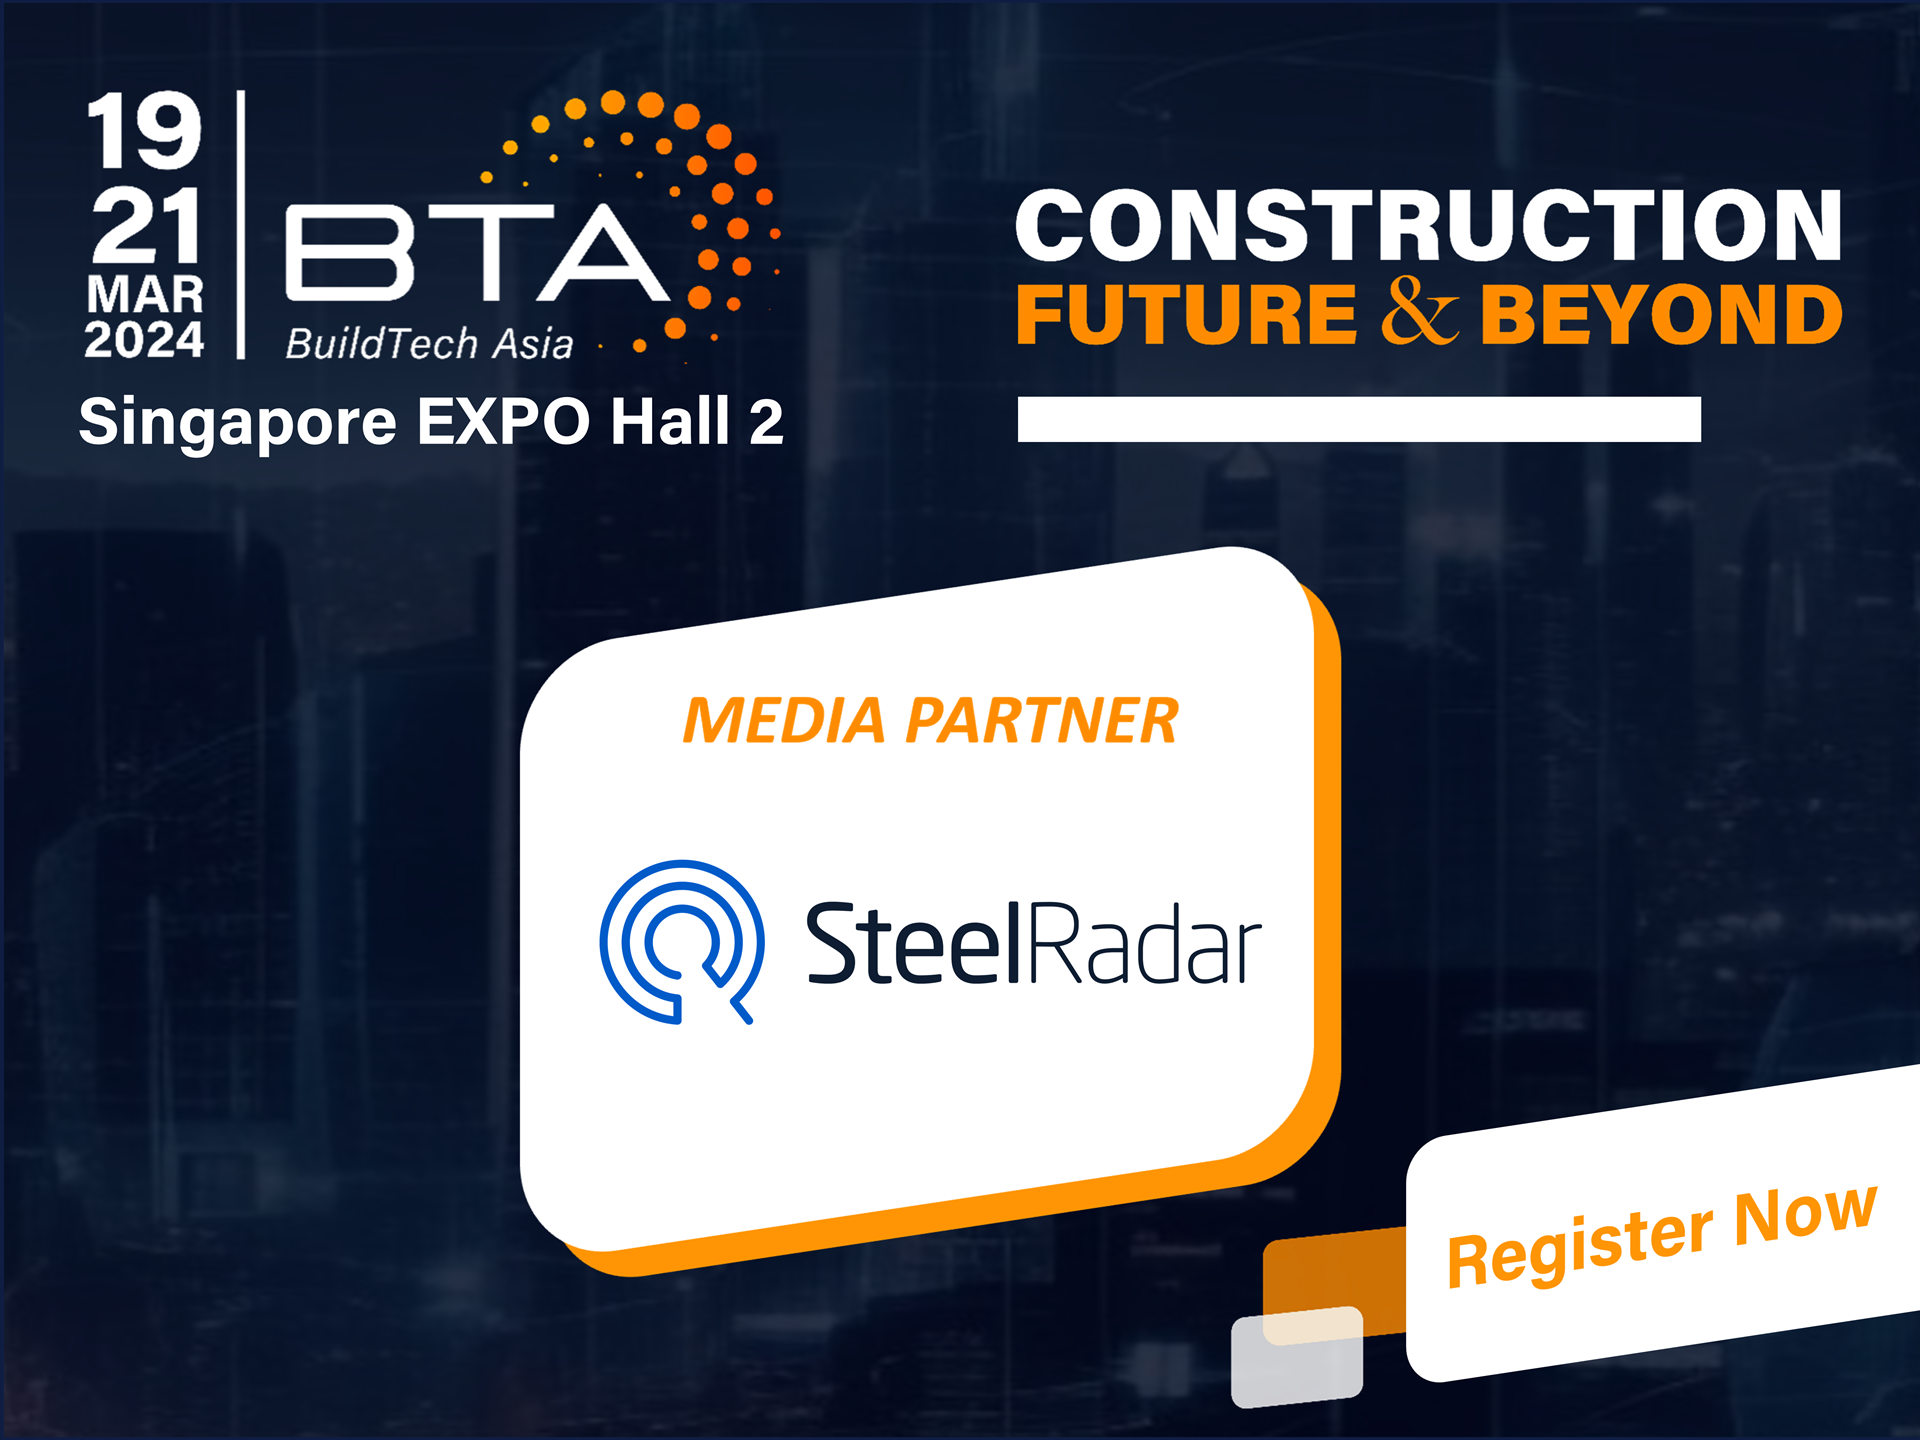 BuildTech Asia, 19 - 21 Mart 2024 tarihlerinde gerçekleşecek